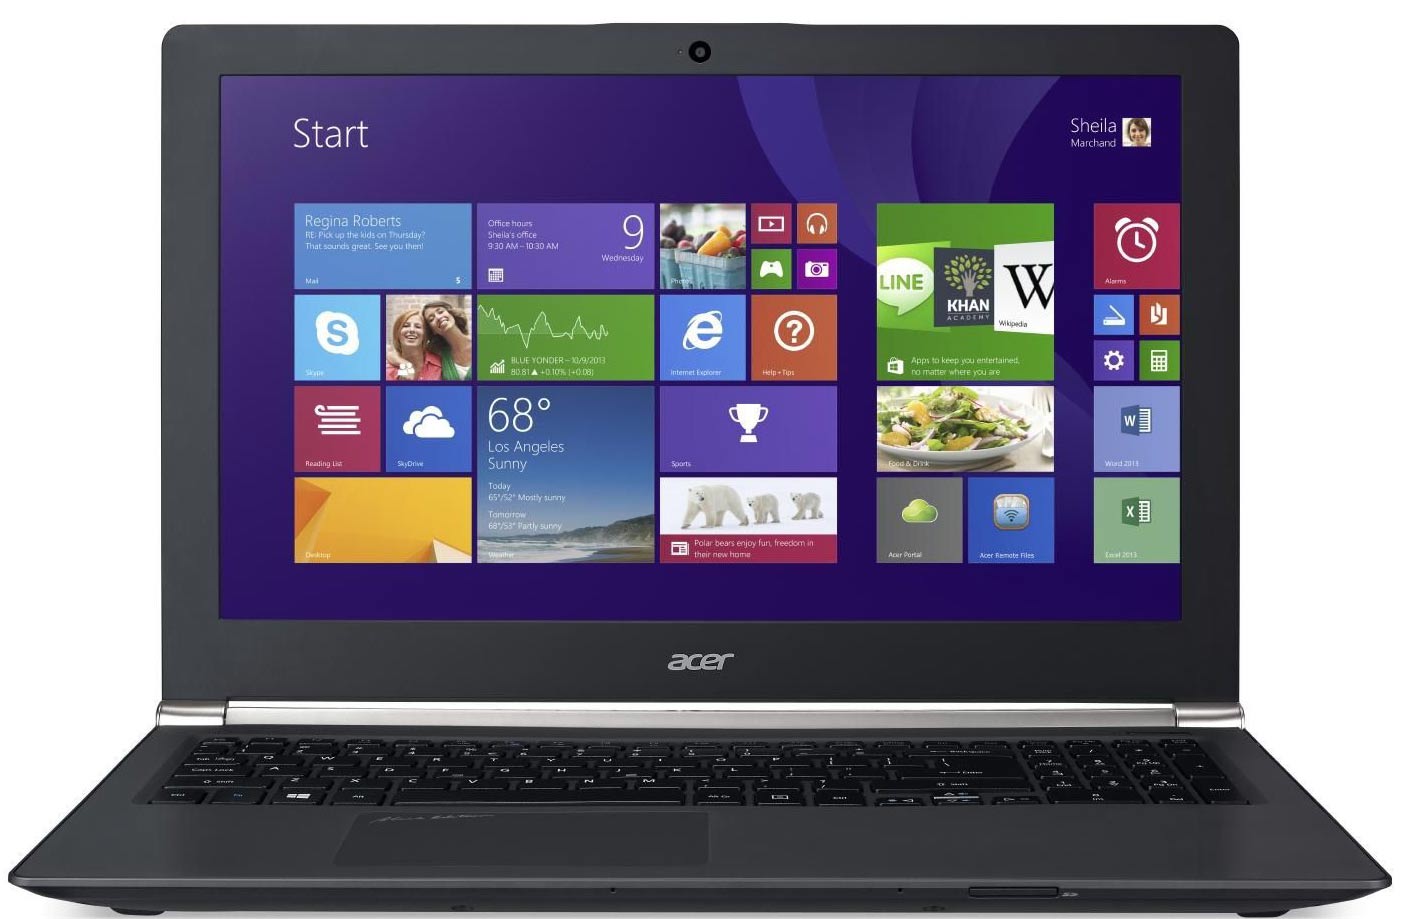 Ноутбук Acer Aspire V Nitro VN7-591G-771J 15.6" 3840x2160, Intel Core i7-4720HQ 2.6GHz, 12Gb RAM, 2Tb+8Gb HDD, GeForce GTX 960M-4Gb, WiFi, BT, Cam, W8.1, черный (NX.MUYER.002)